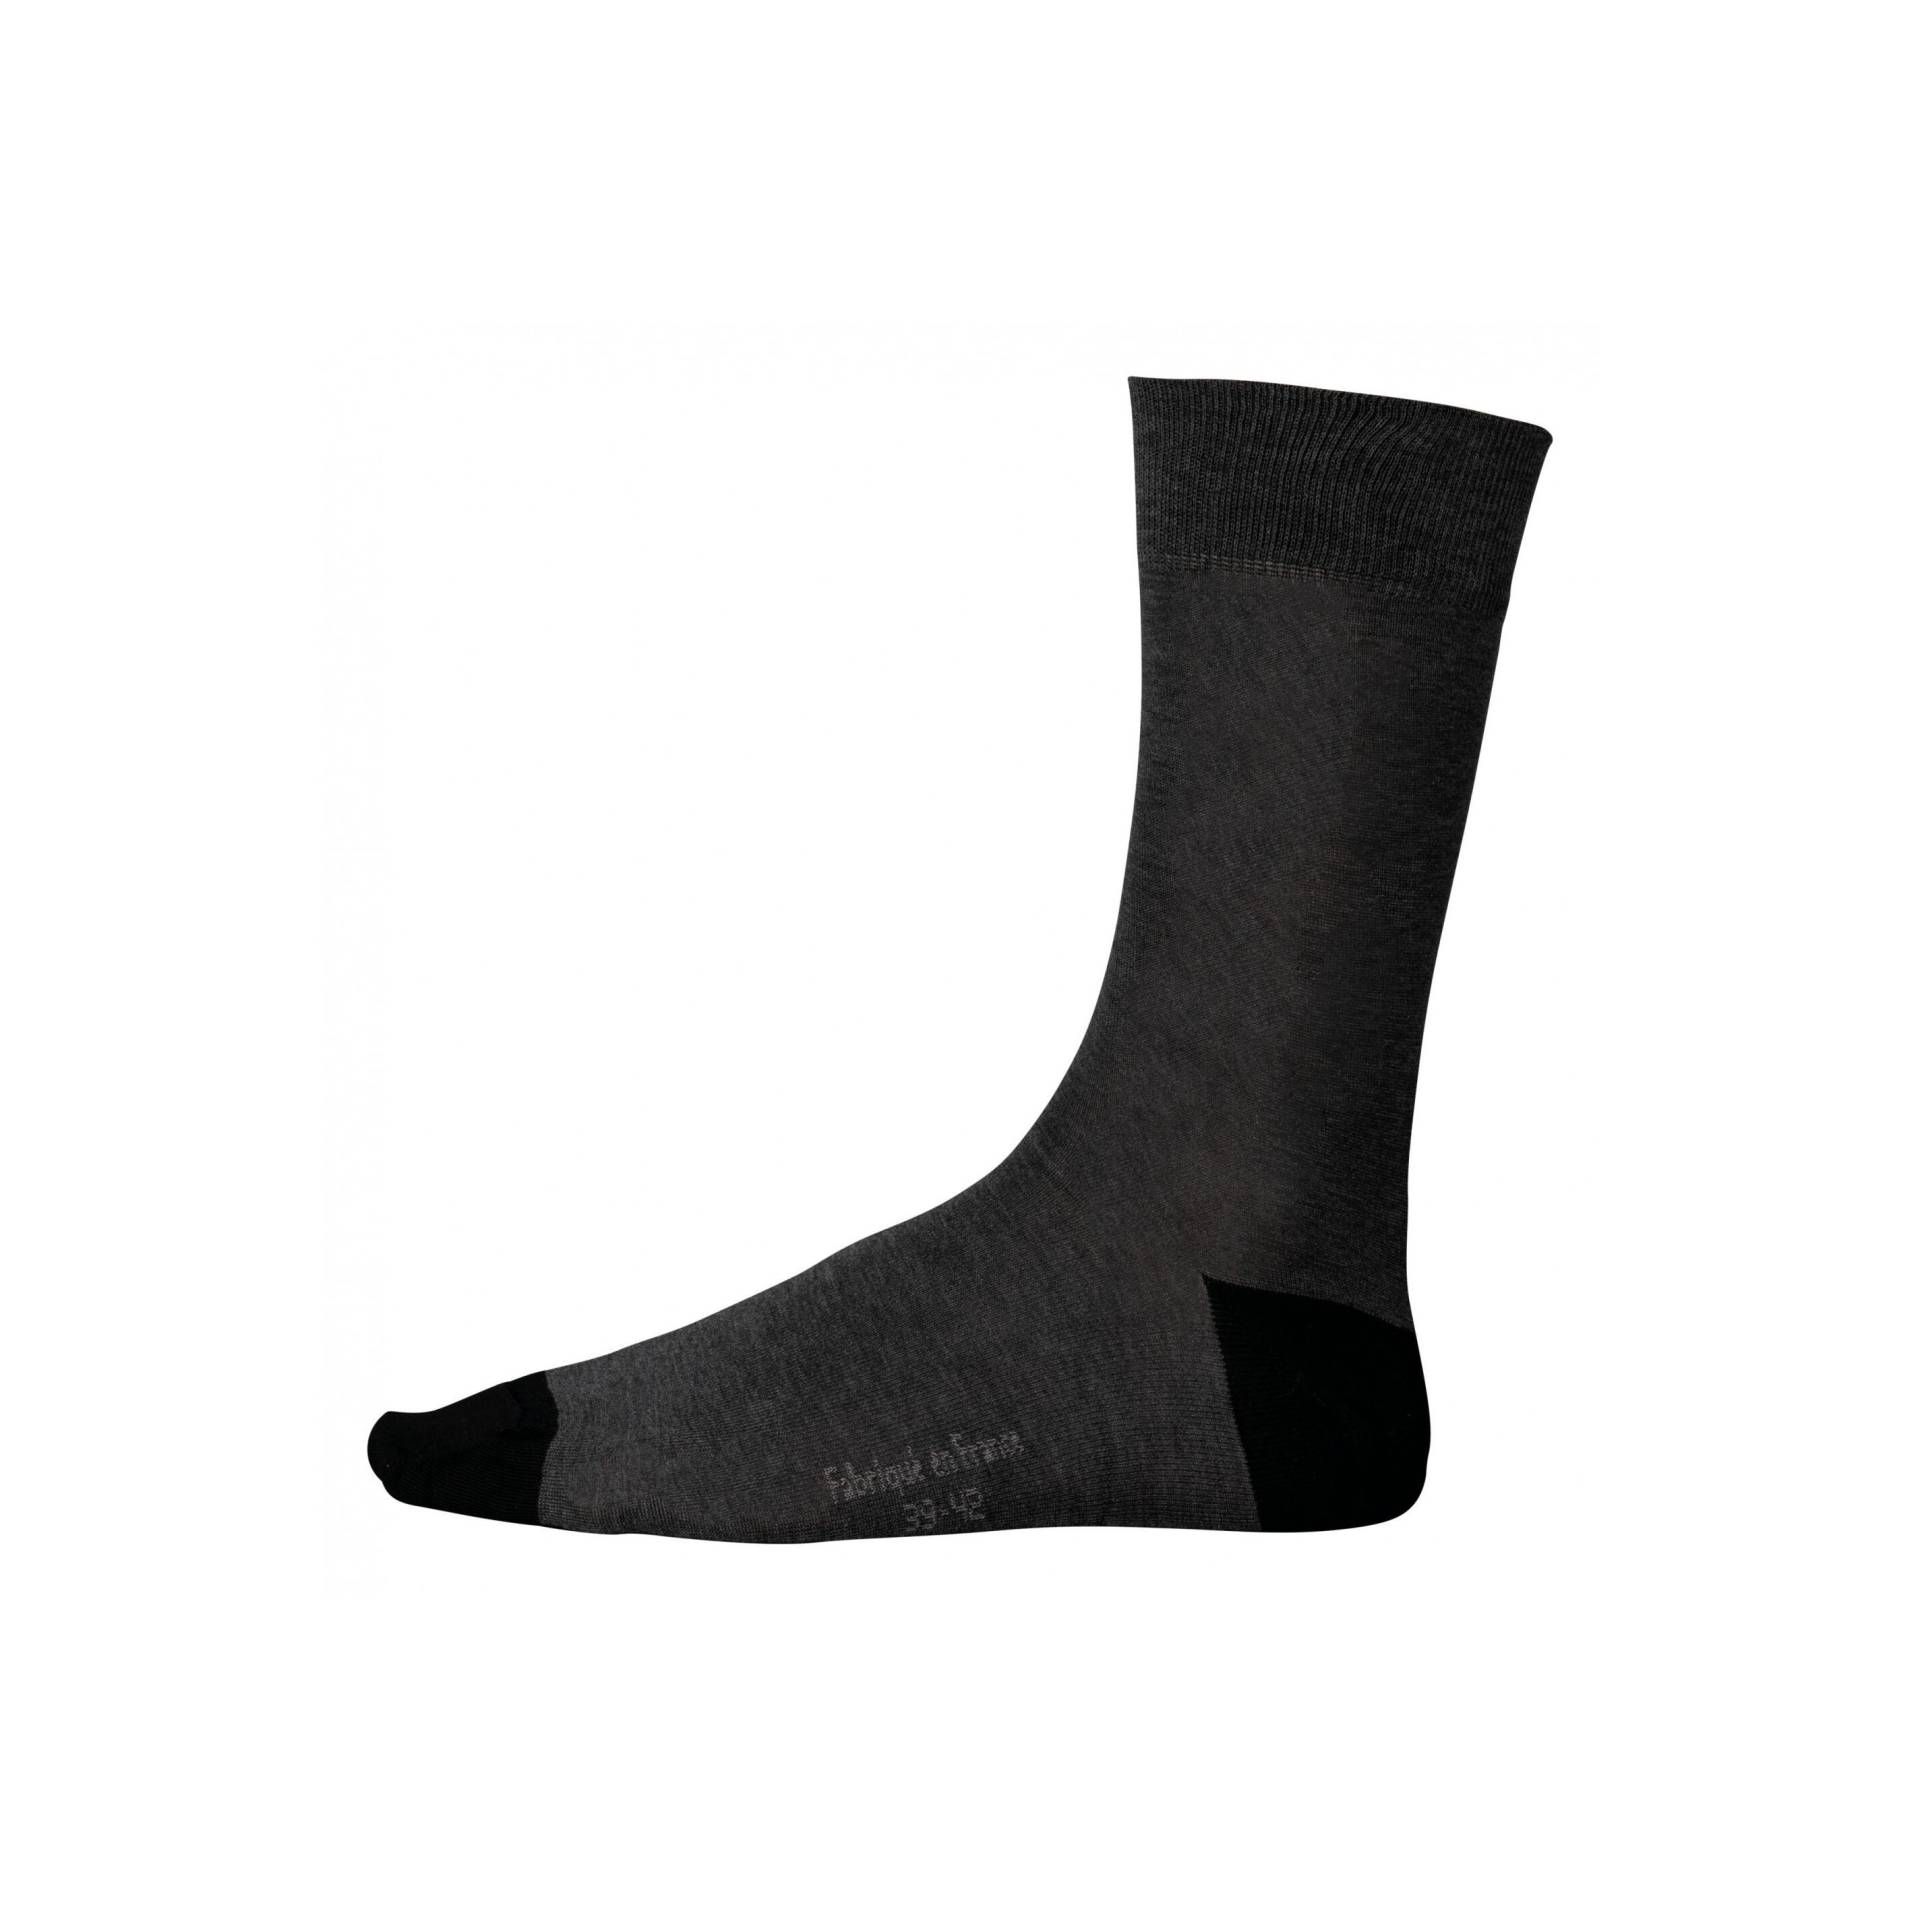 Halbhohe Socken Aus Mercerisierter Baumwolle Origine France Garantie Herren  39-42 von Kariban